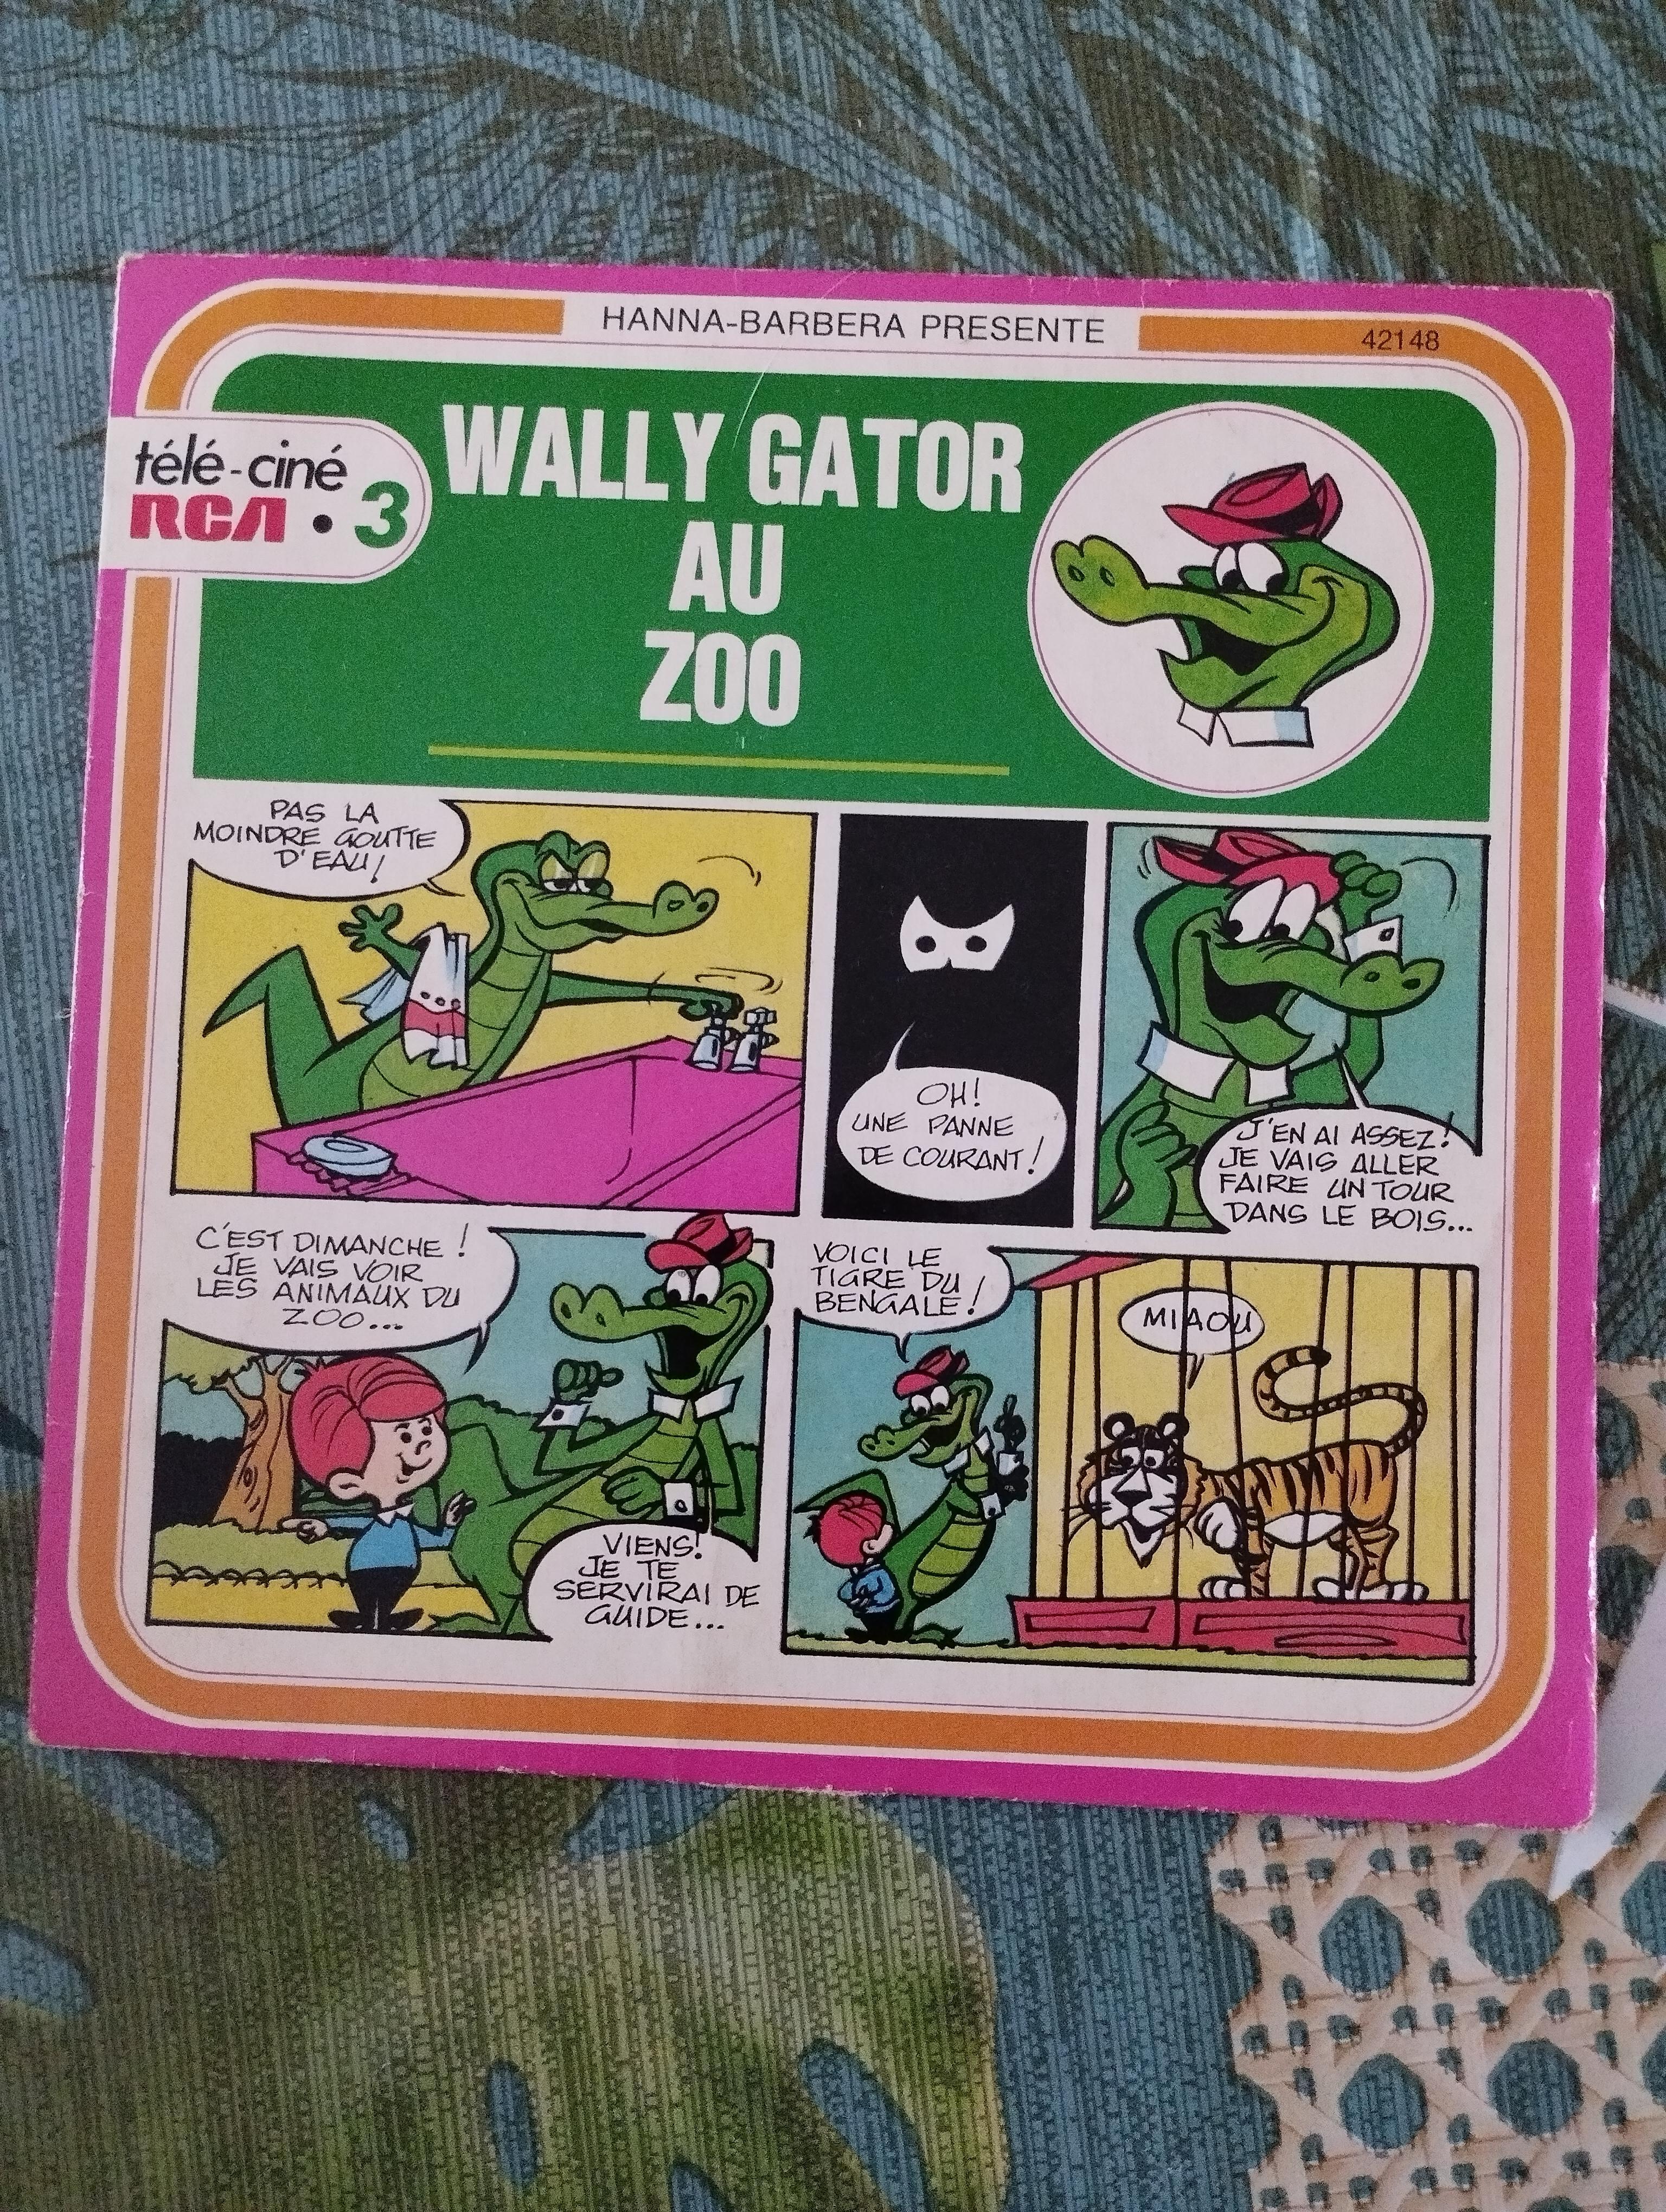 troc de troc rare disque vinyle 45t - wally gator au zoo image 0